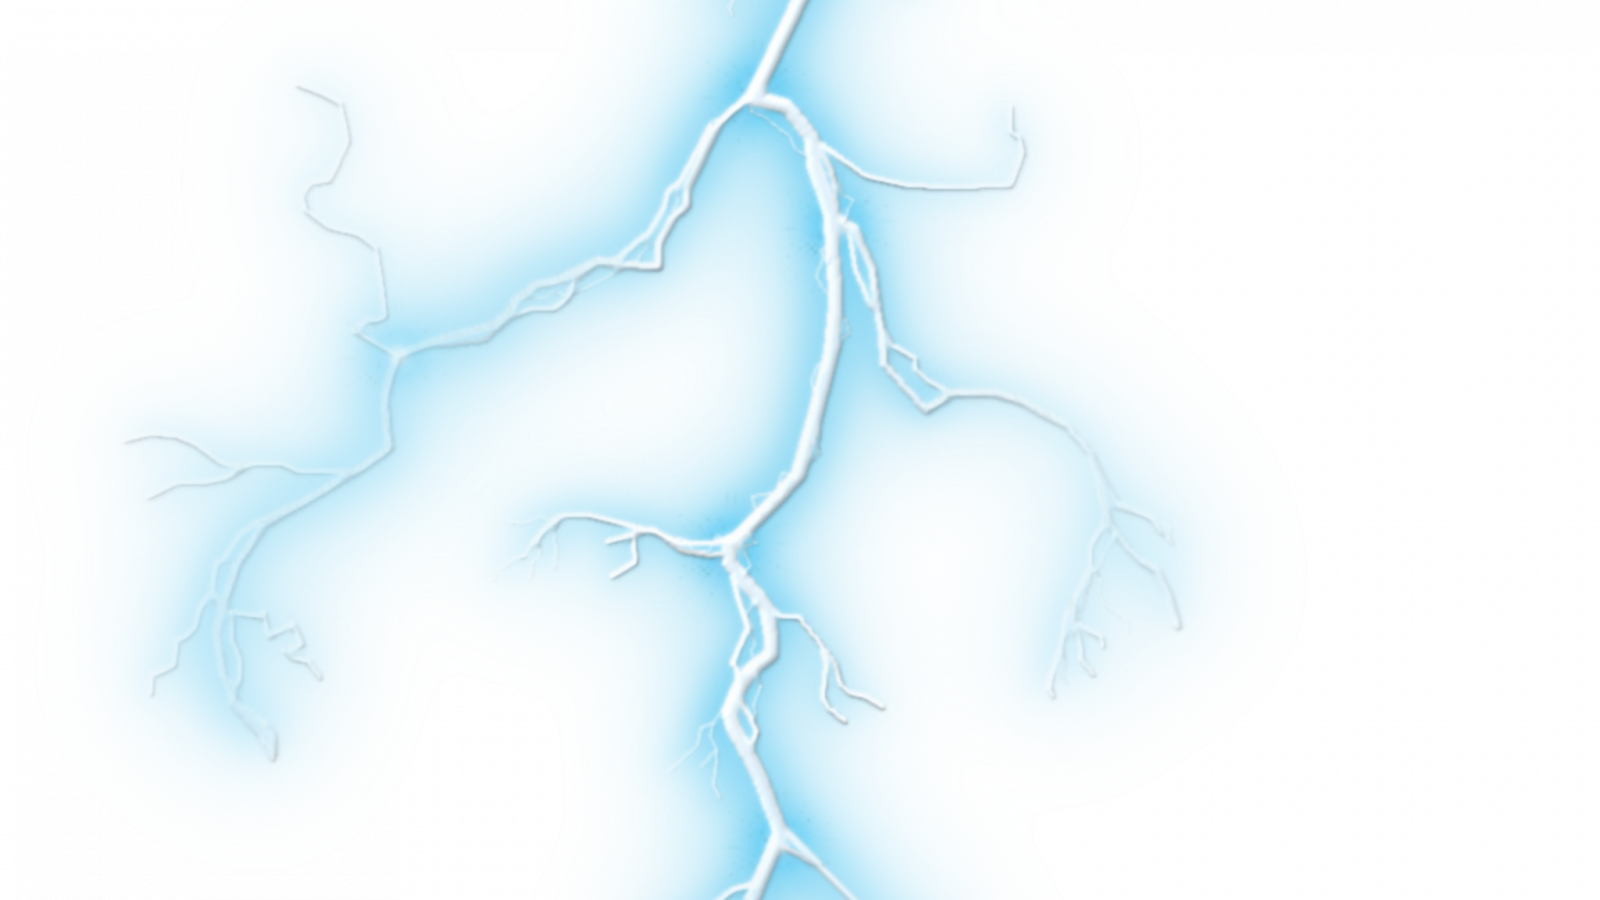 Lightning Bolt PNG Background